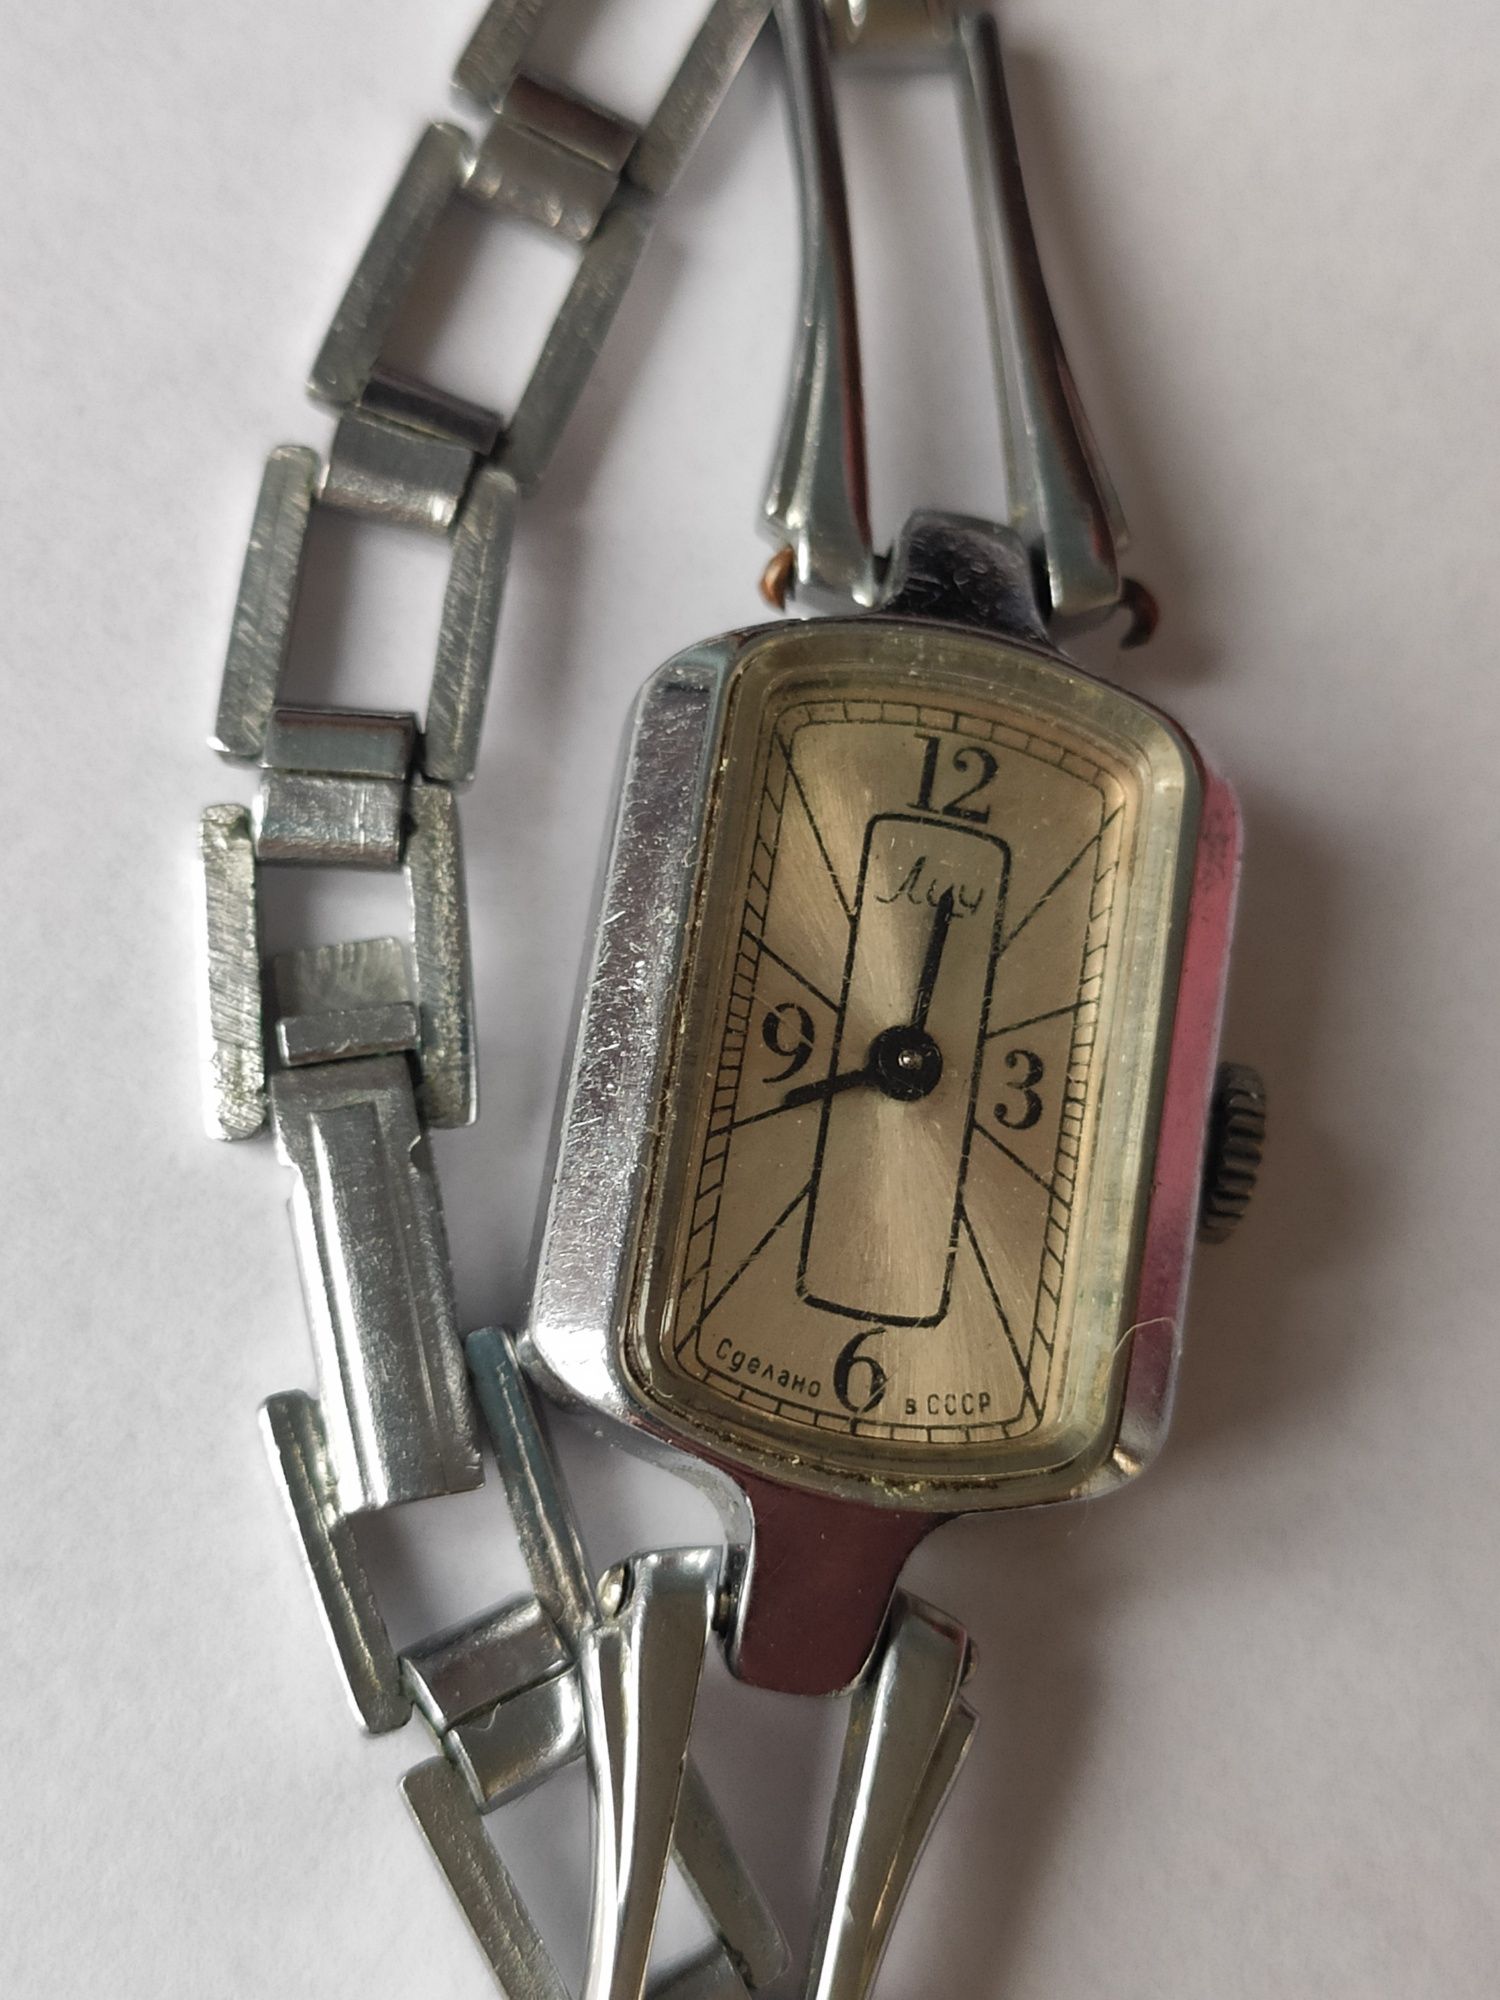 Damski zegarek Łucz z CCCP (Związku Radzieckiego) nie działa